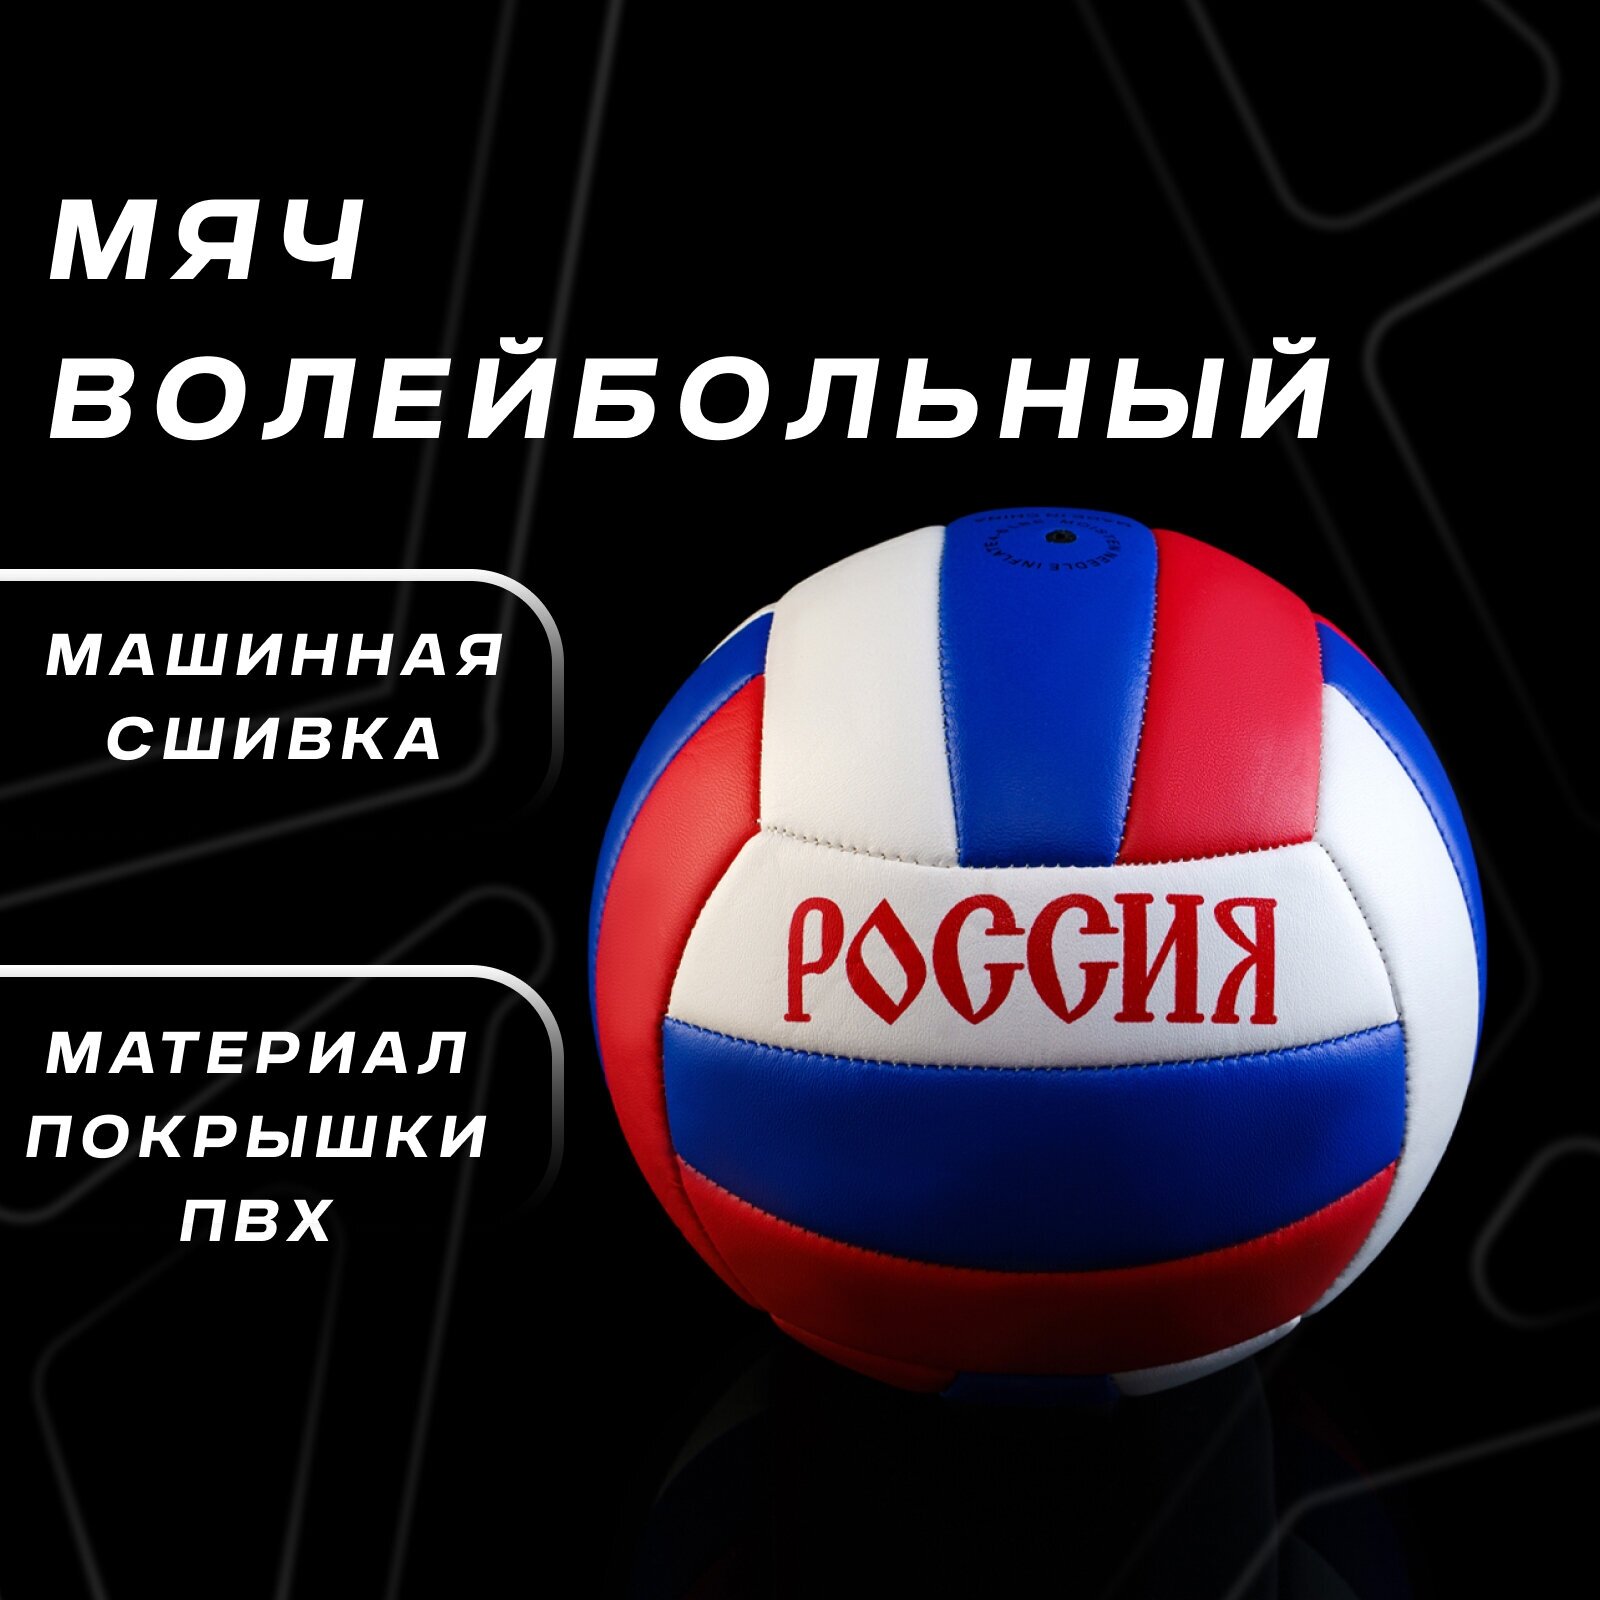 Мяч ONLYTOP, волейбольный, размер 5, вес 260 г, 18 панелей, PVC, 2 подслоя, машинная сшивка, цвет белый, синий, красный